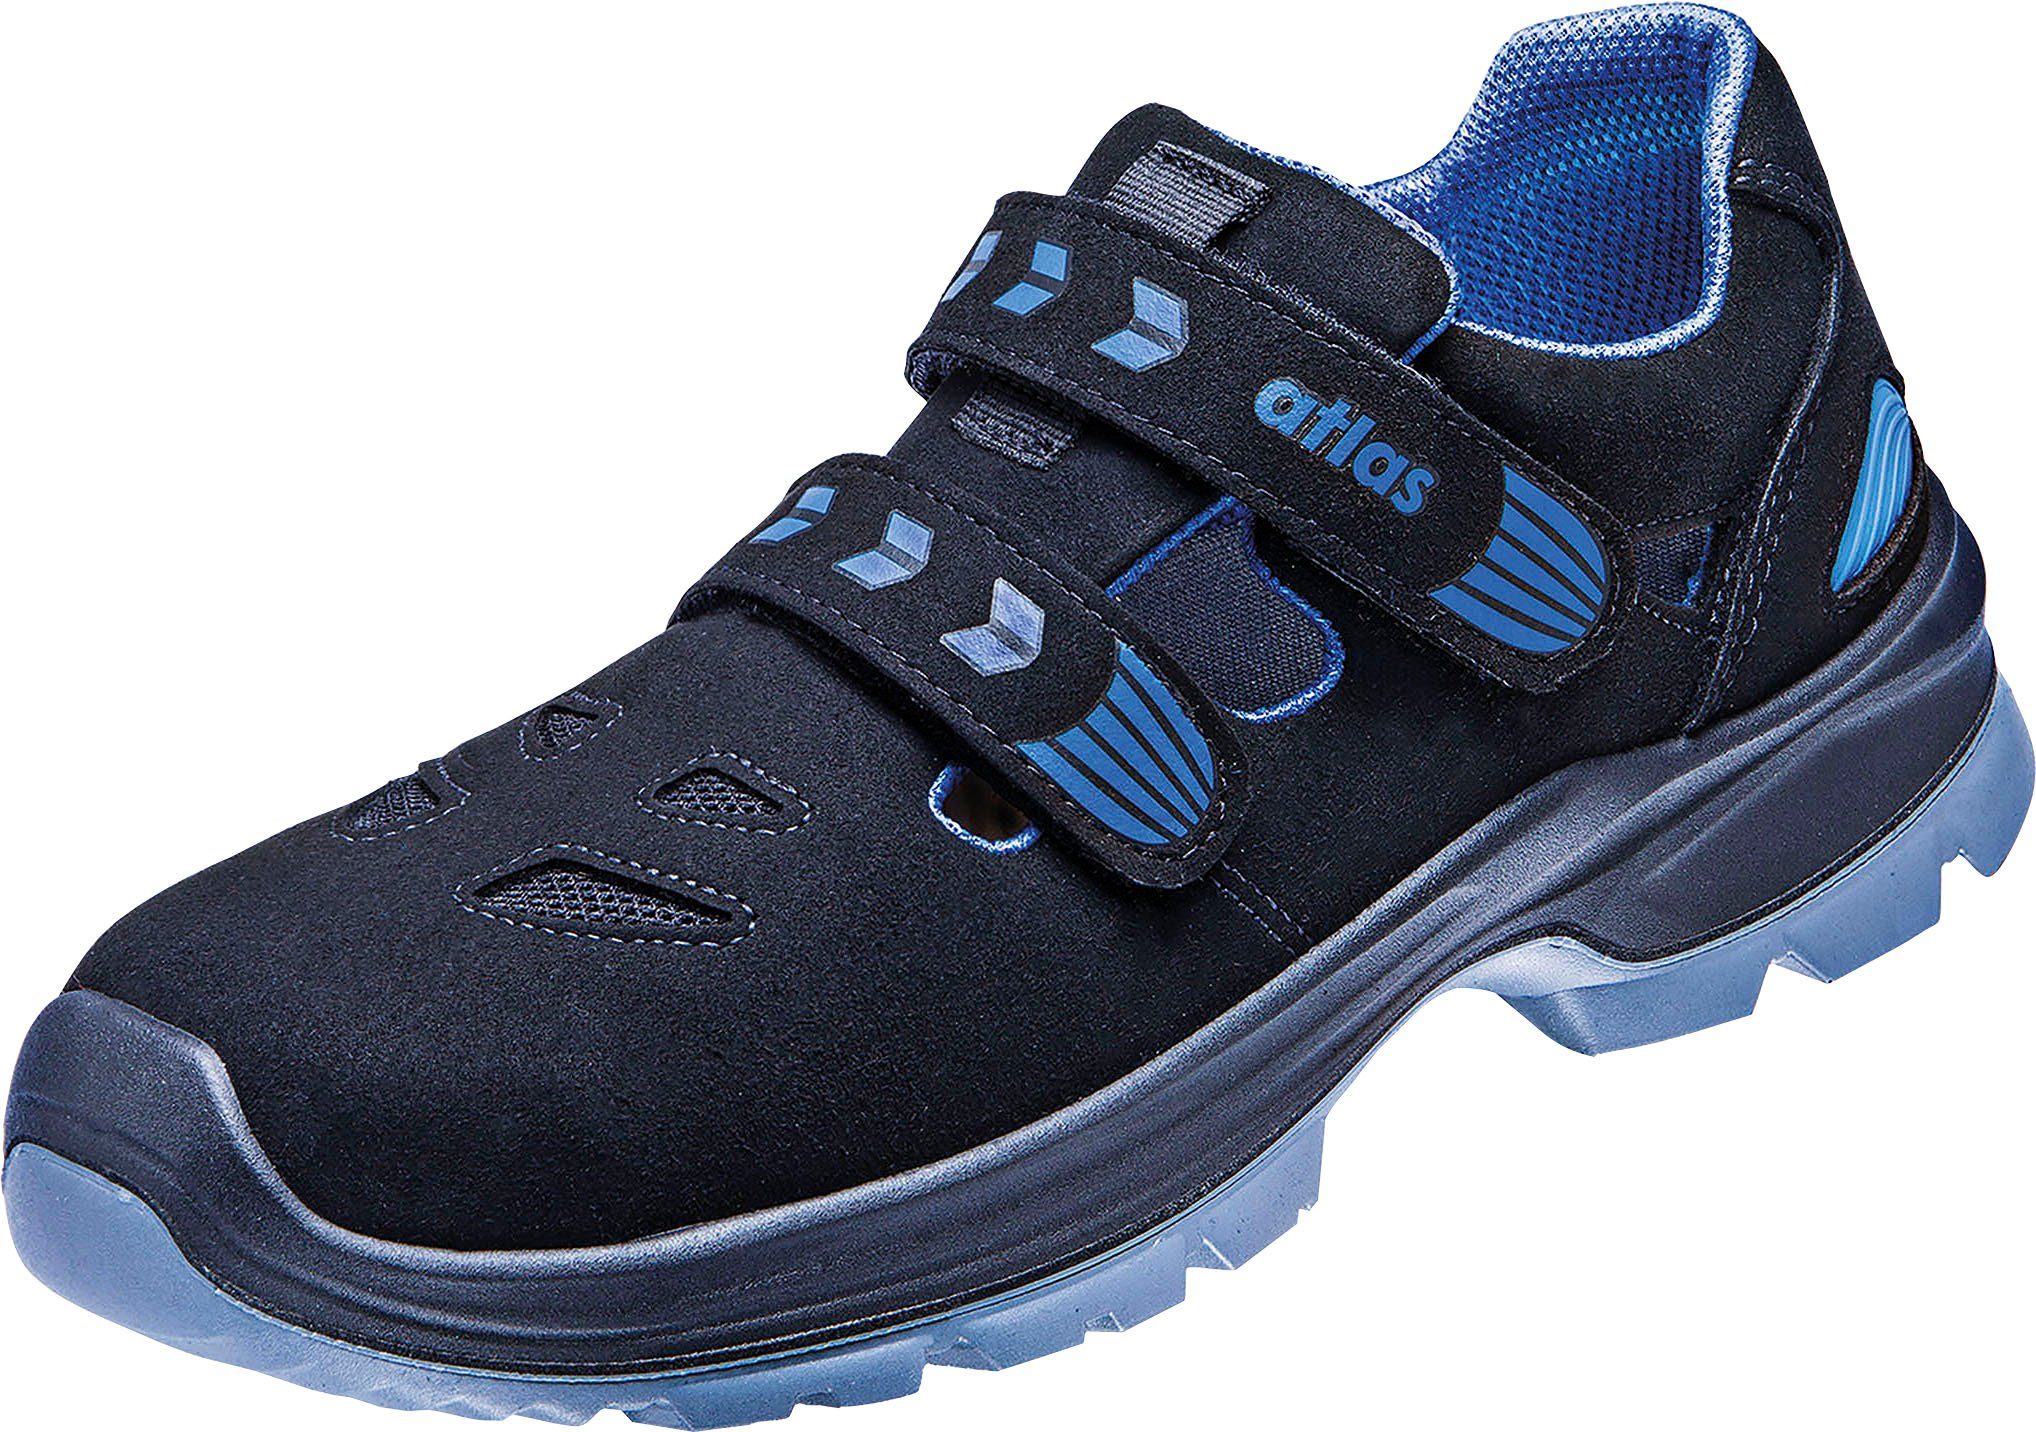 14, Atlas 360 Schuhe Sicherheitsklasse S1 Ergo-Med Schuhweite Sandale, Sicherheitsschuh